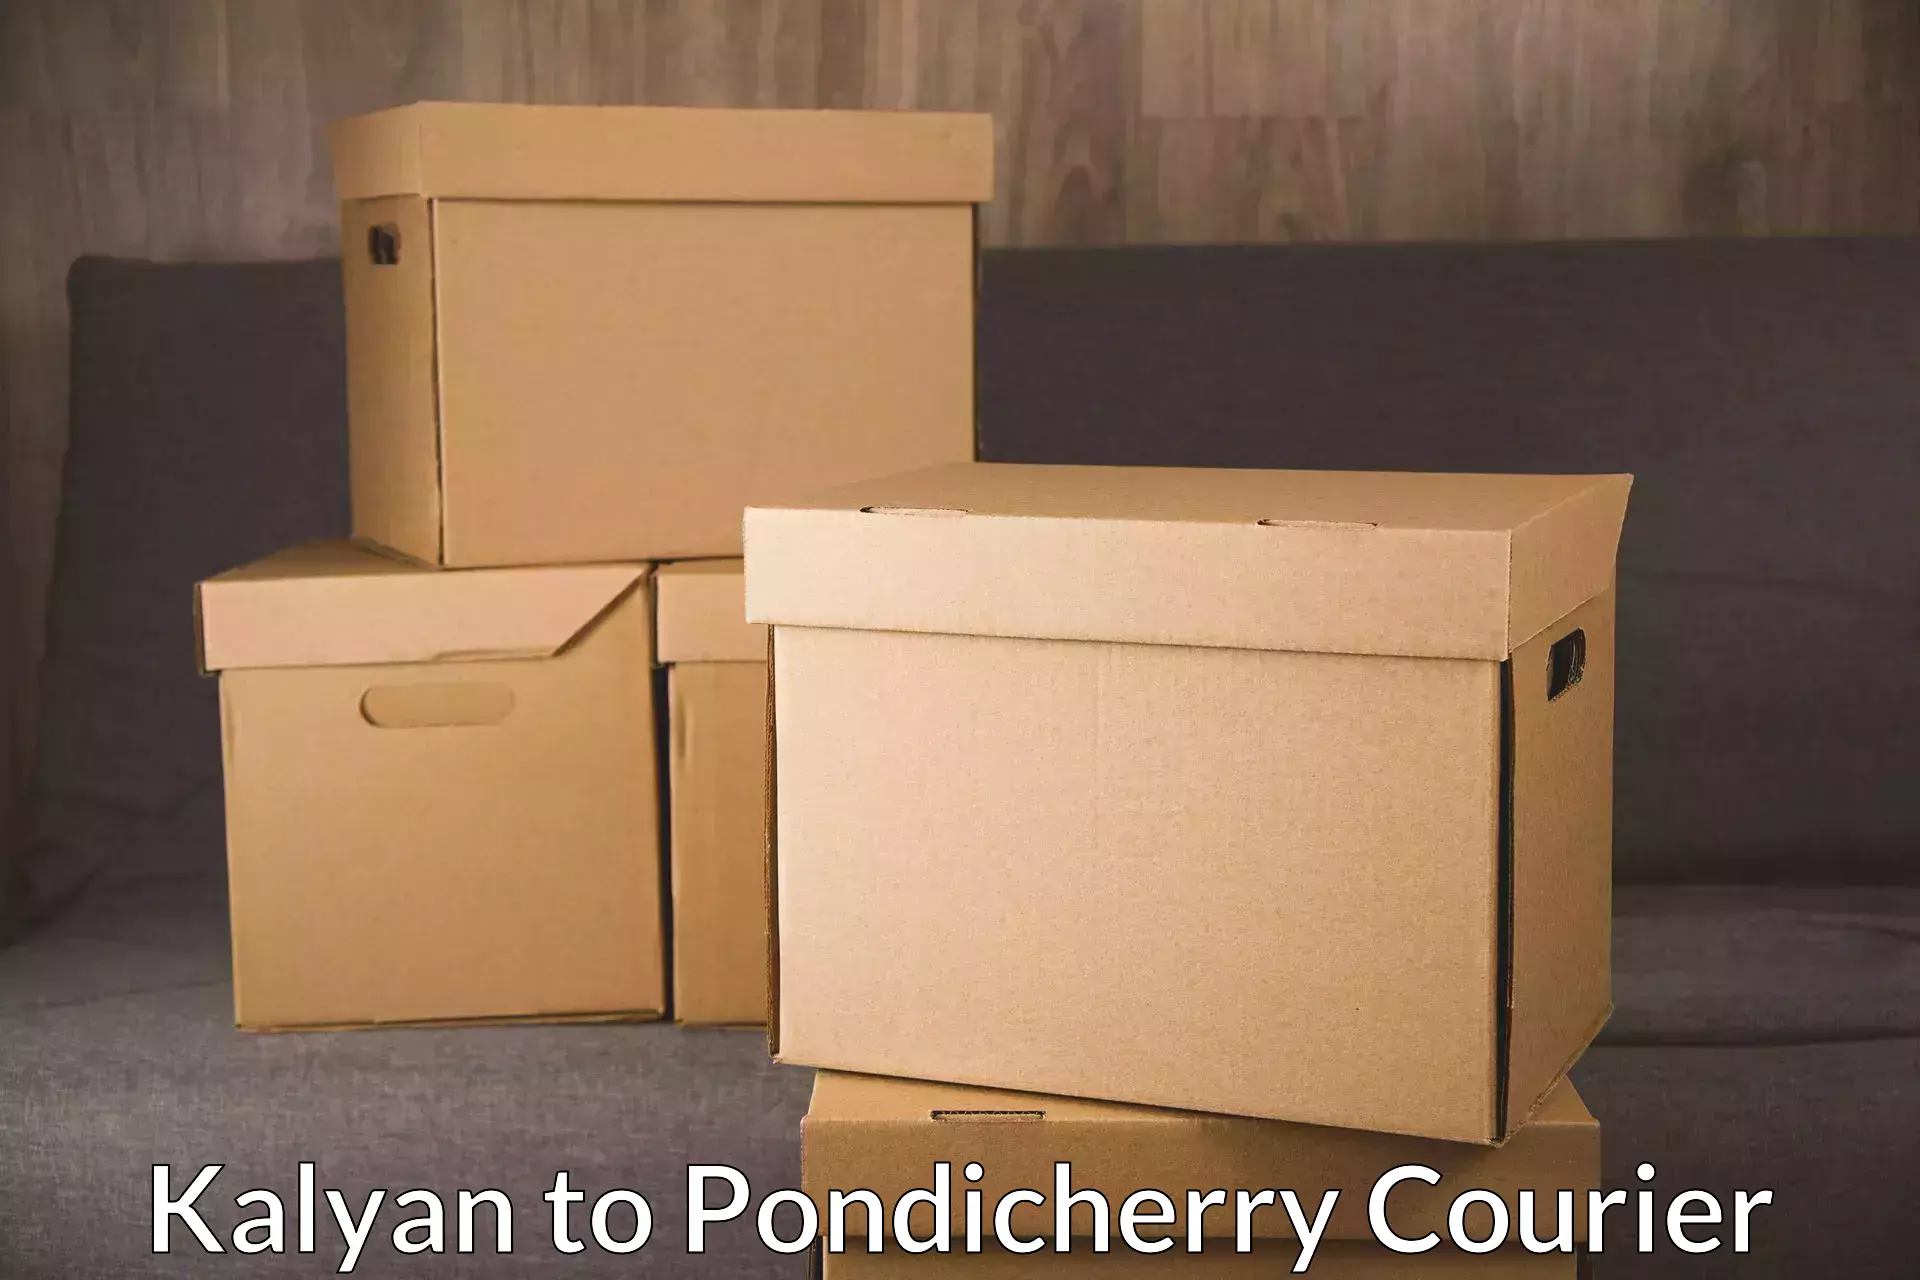 24-hour courier service Kalyan to Pondicherry